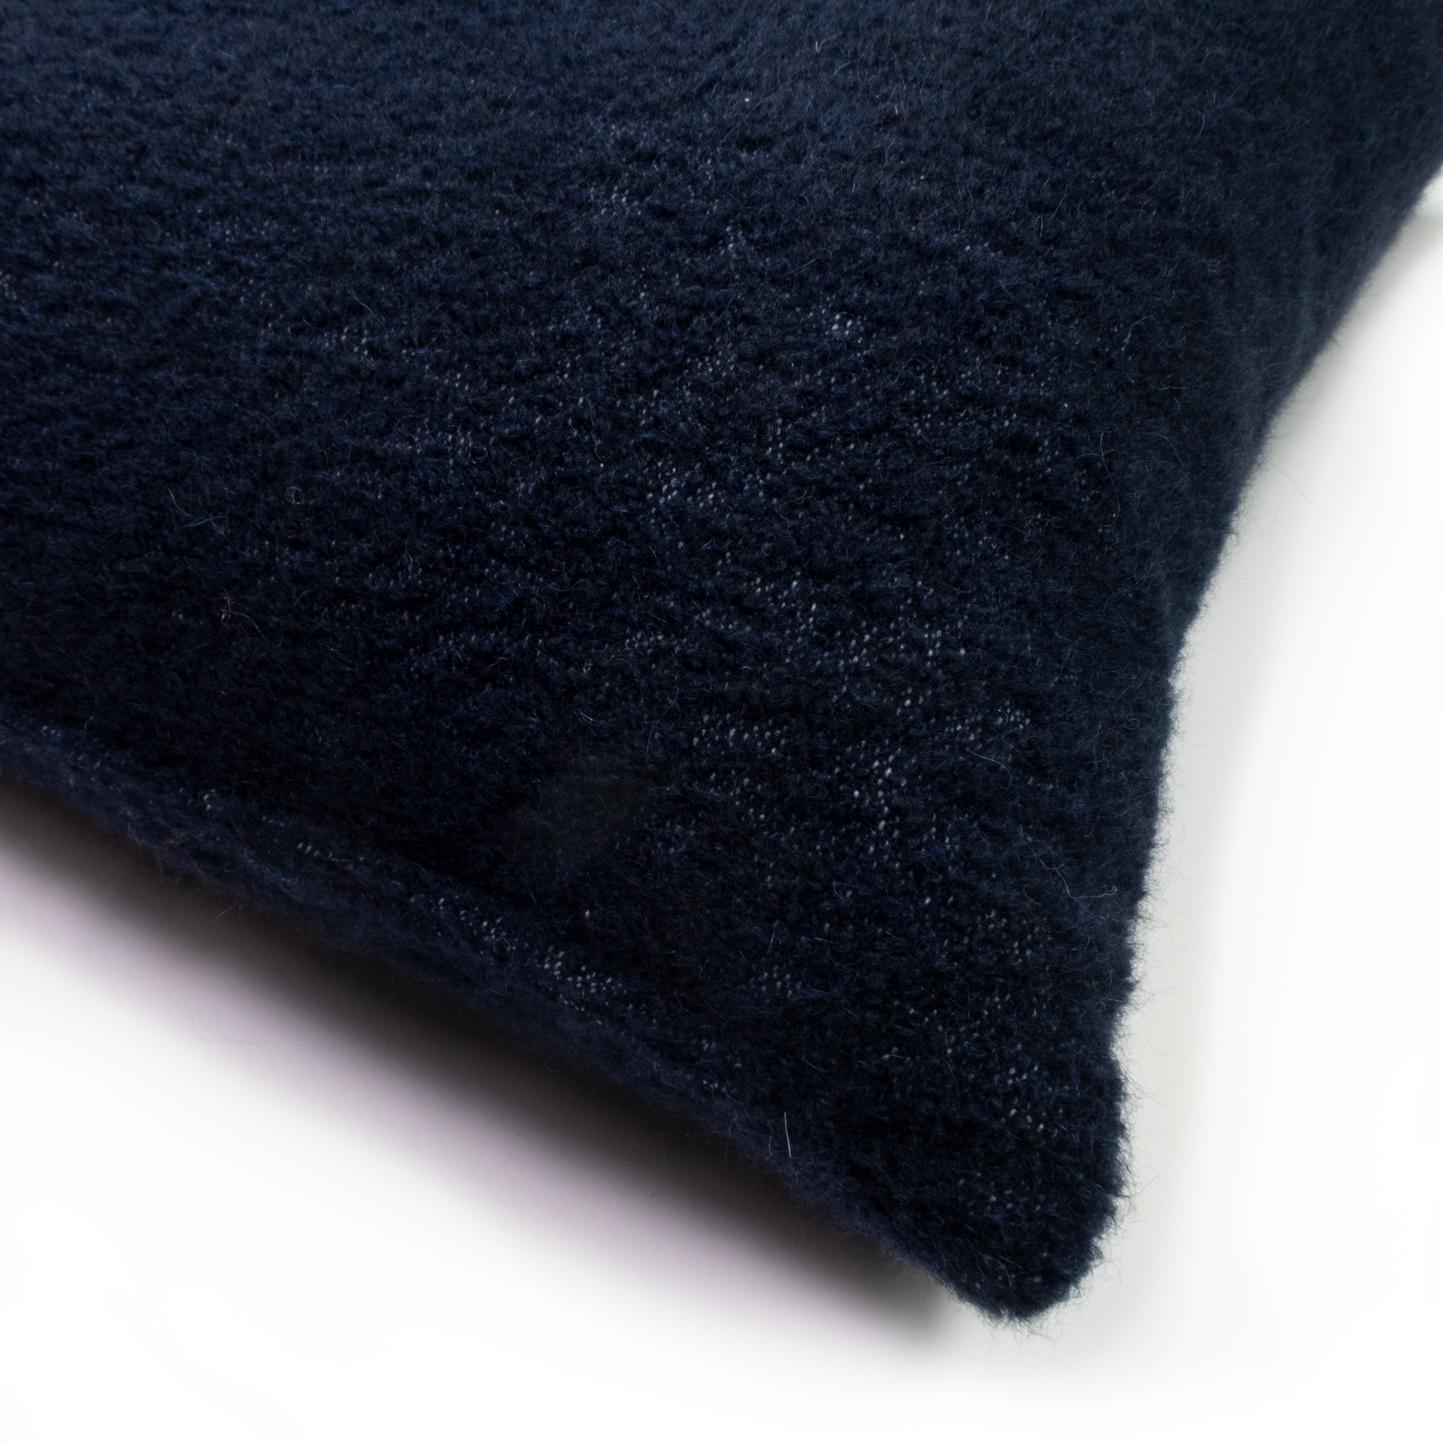 Alpakawolle wird oft als einer der plüschigsten und bequemsten Stoffe in der Welt der Textilien angesehen und ist der Gipfel von Luxus und Komfort. Durch die Verwendung in unseren Chérie-Kissen ist Evolution21 in der Lage, diese Opulenz in Ihr Heim